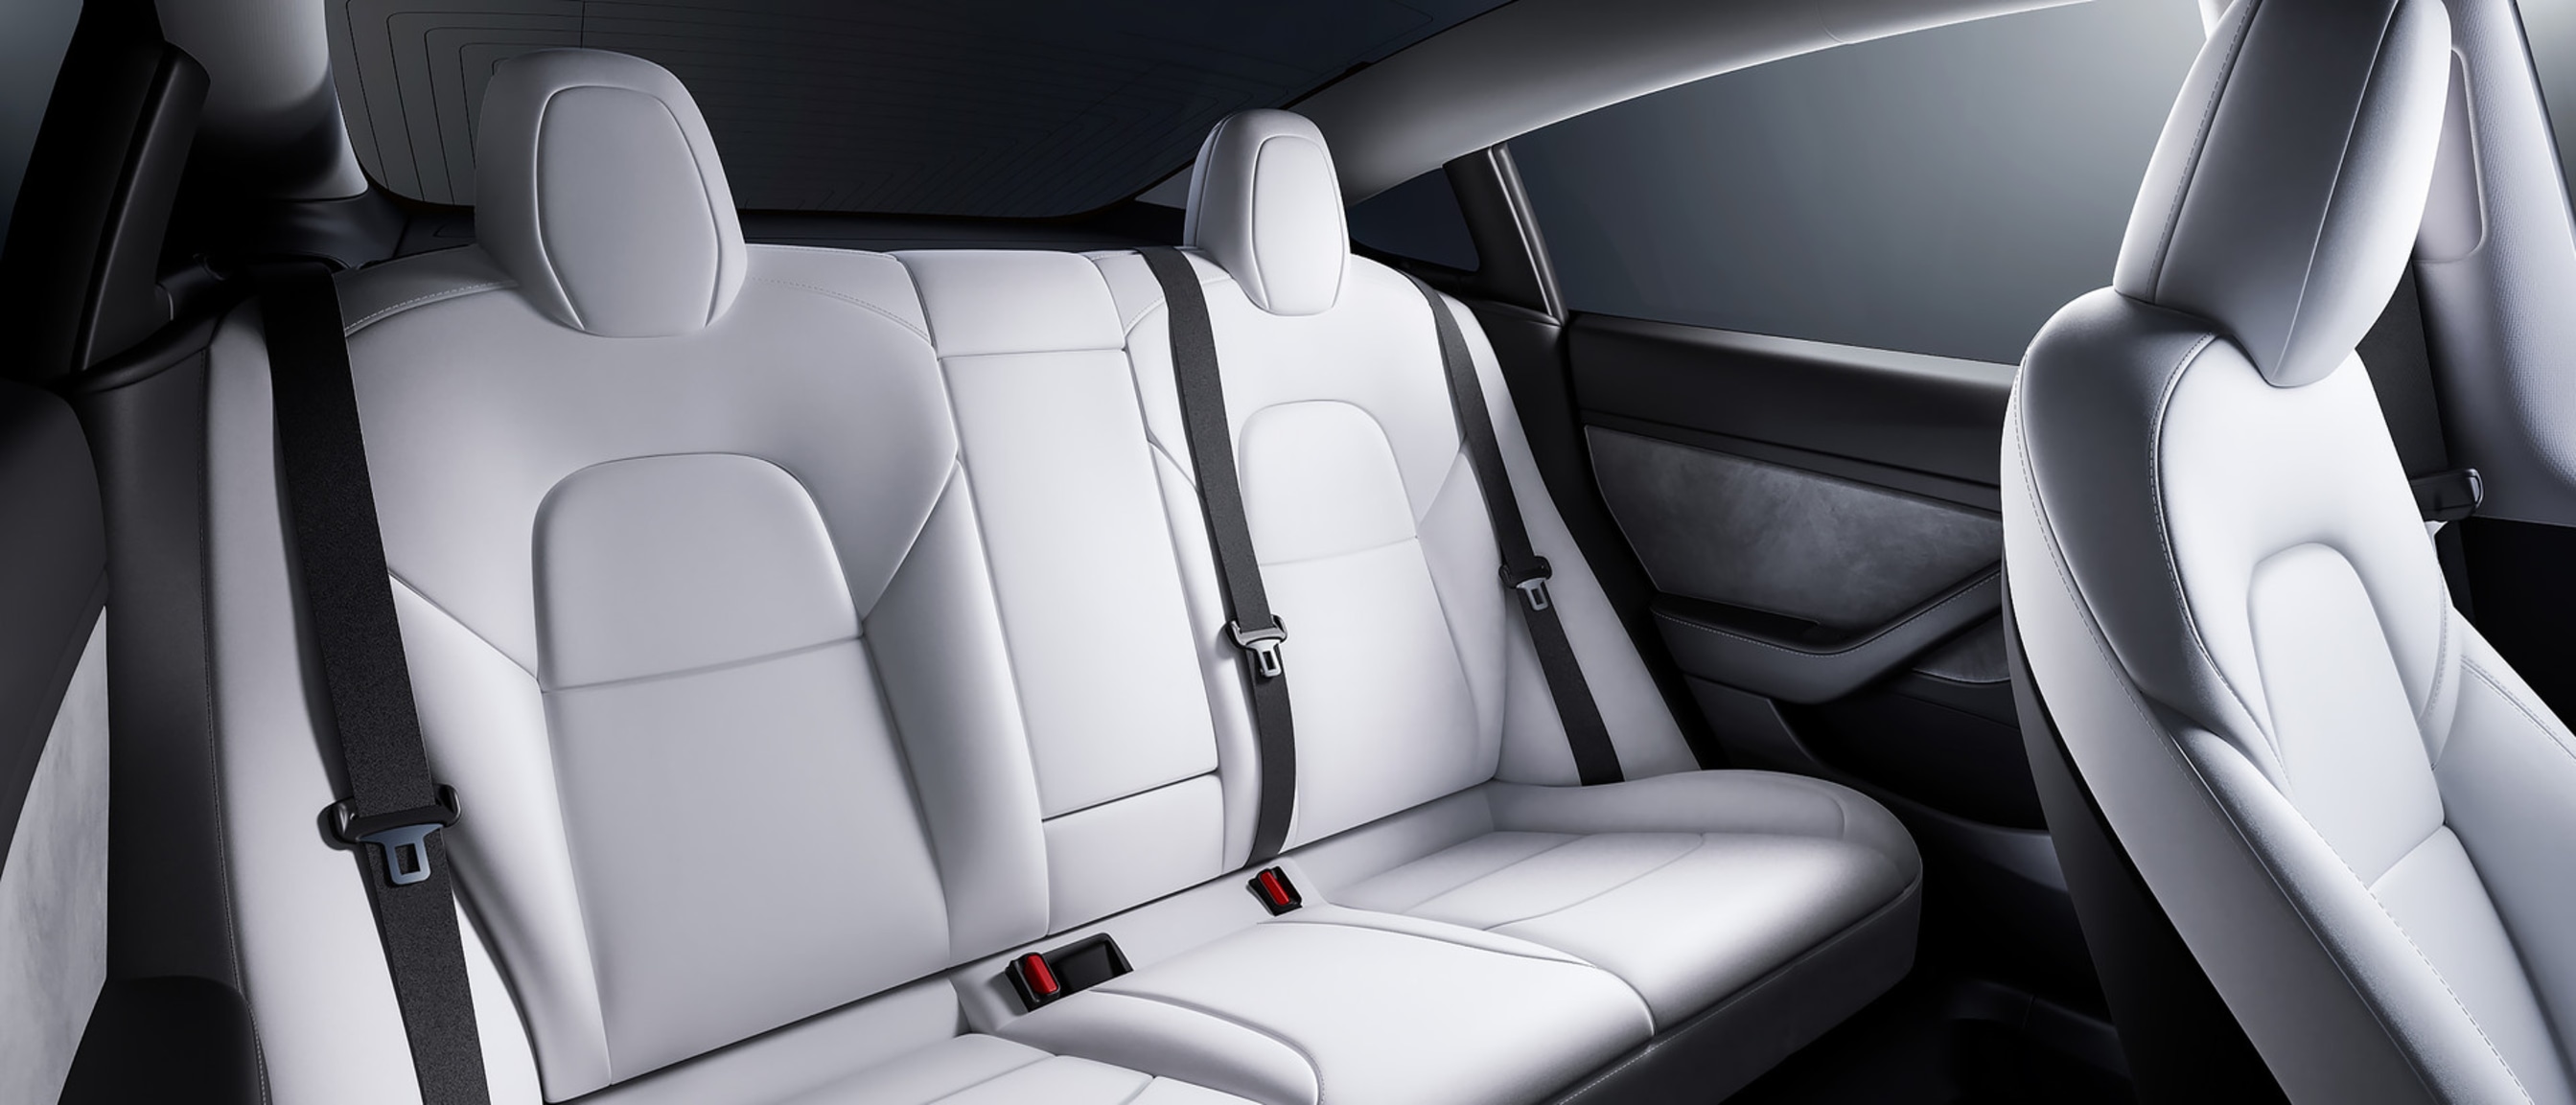 A tágas hátsó ülések képe egy fehér belsővel rendelkező Model 3-ban